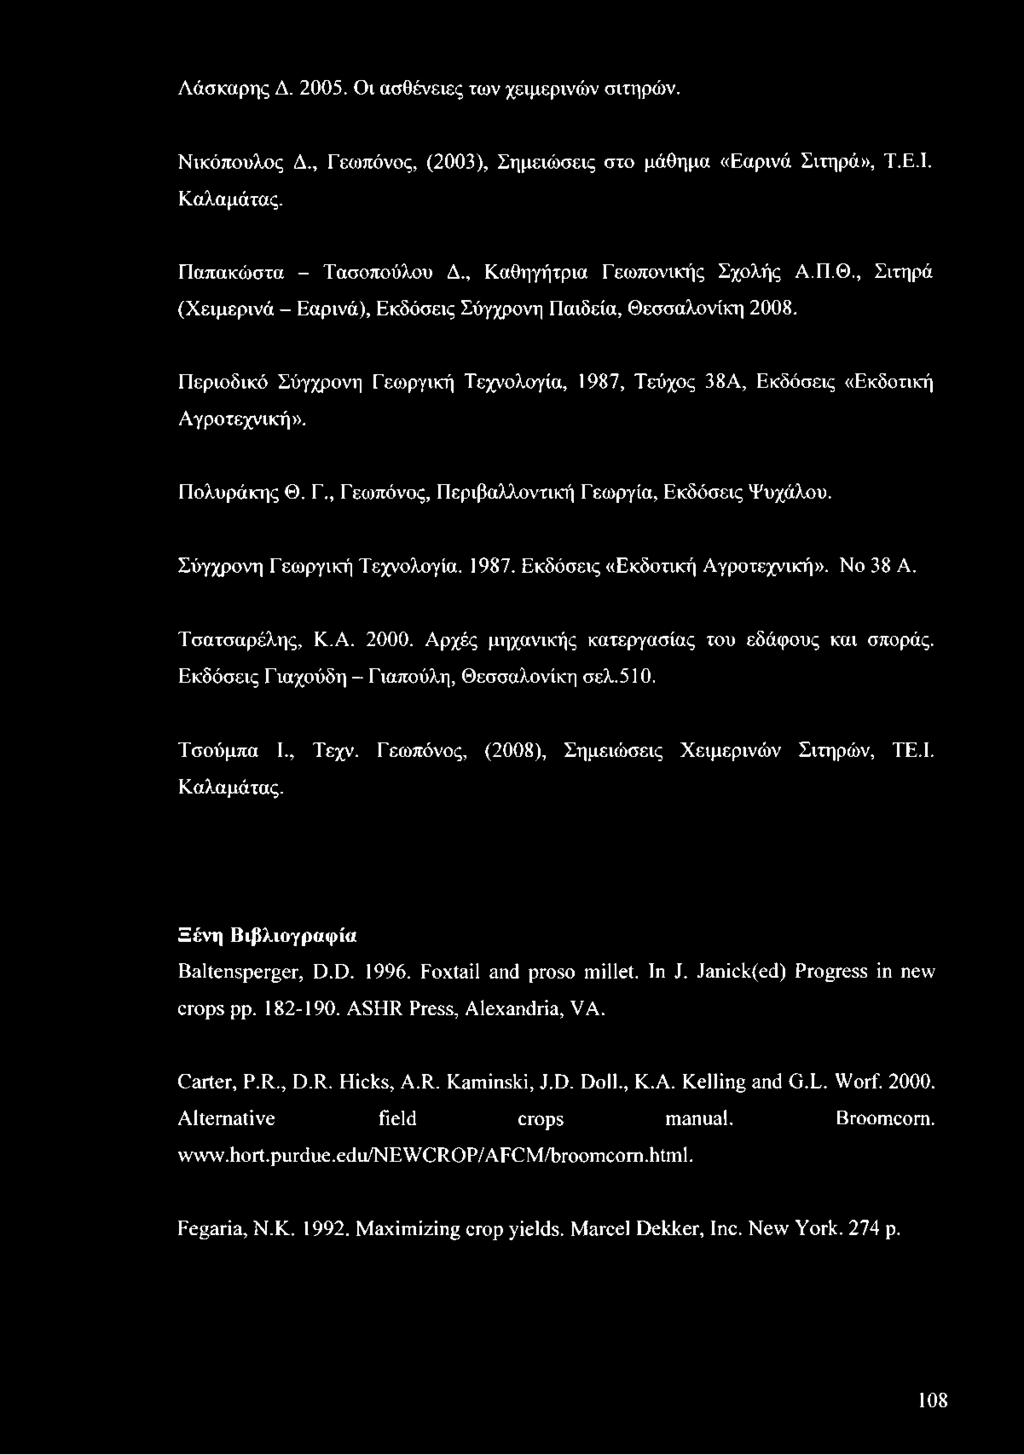 Περιοδικό Σύγχρονη Γεωργική Τεχνολογία, 1987, Τεύχος 38Α, Εκδόσεις «Εκδοτική Αγροτεχνική». Πολυράκης Θ. Γ., Γεωπόνος, Περιβαλλοντική Γεωργία, Εκδόσεις Ψυχάλου. Σύγχρονη Γεωργική Τεχνολογία. 1987. Εκδόσεις «Εκδοτική Αγροτεχνική». No 38 A.